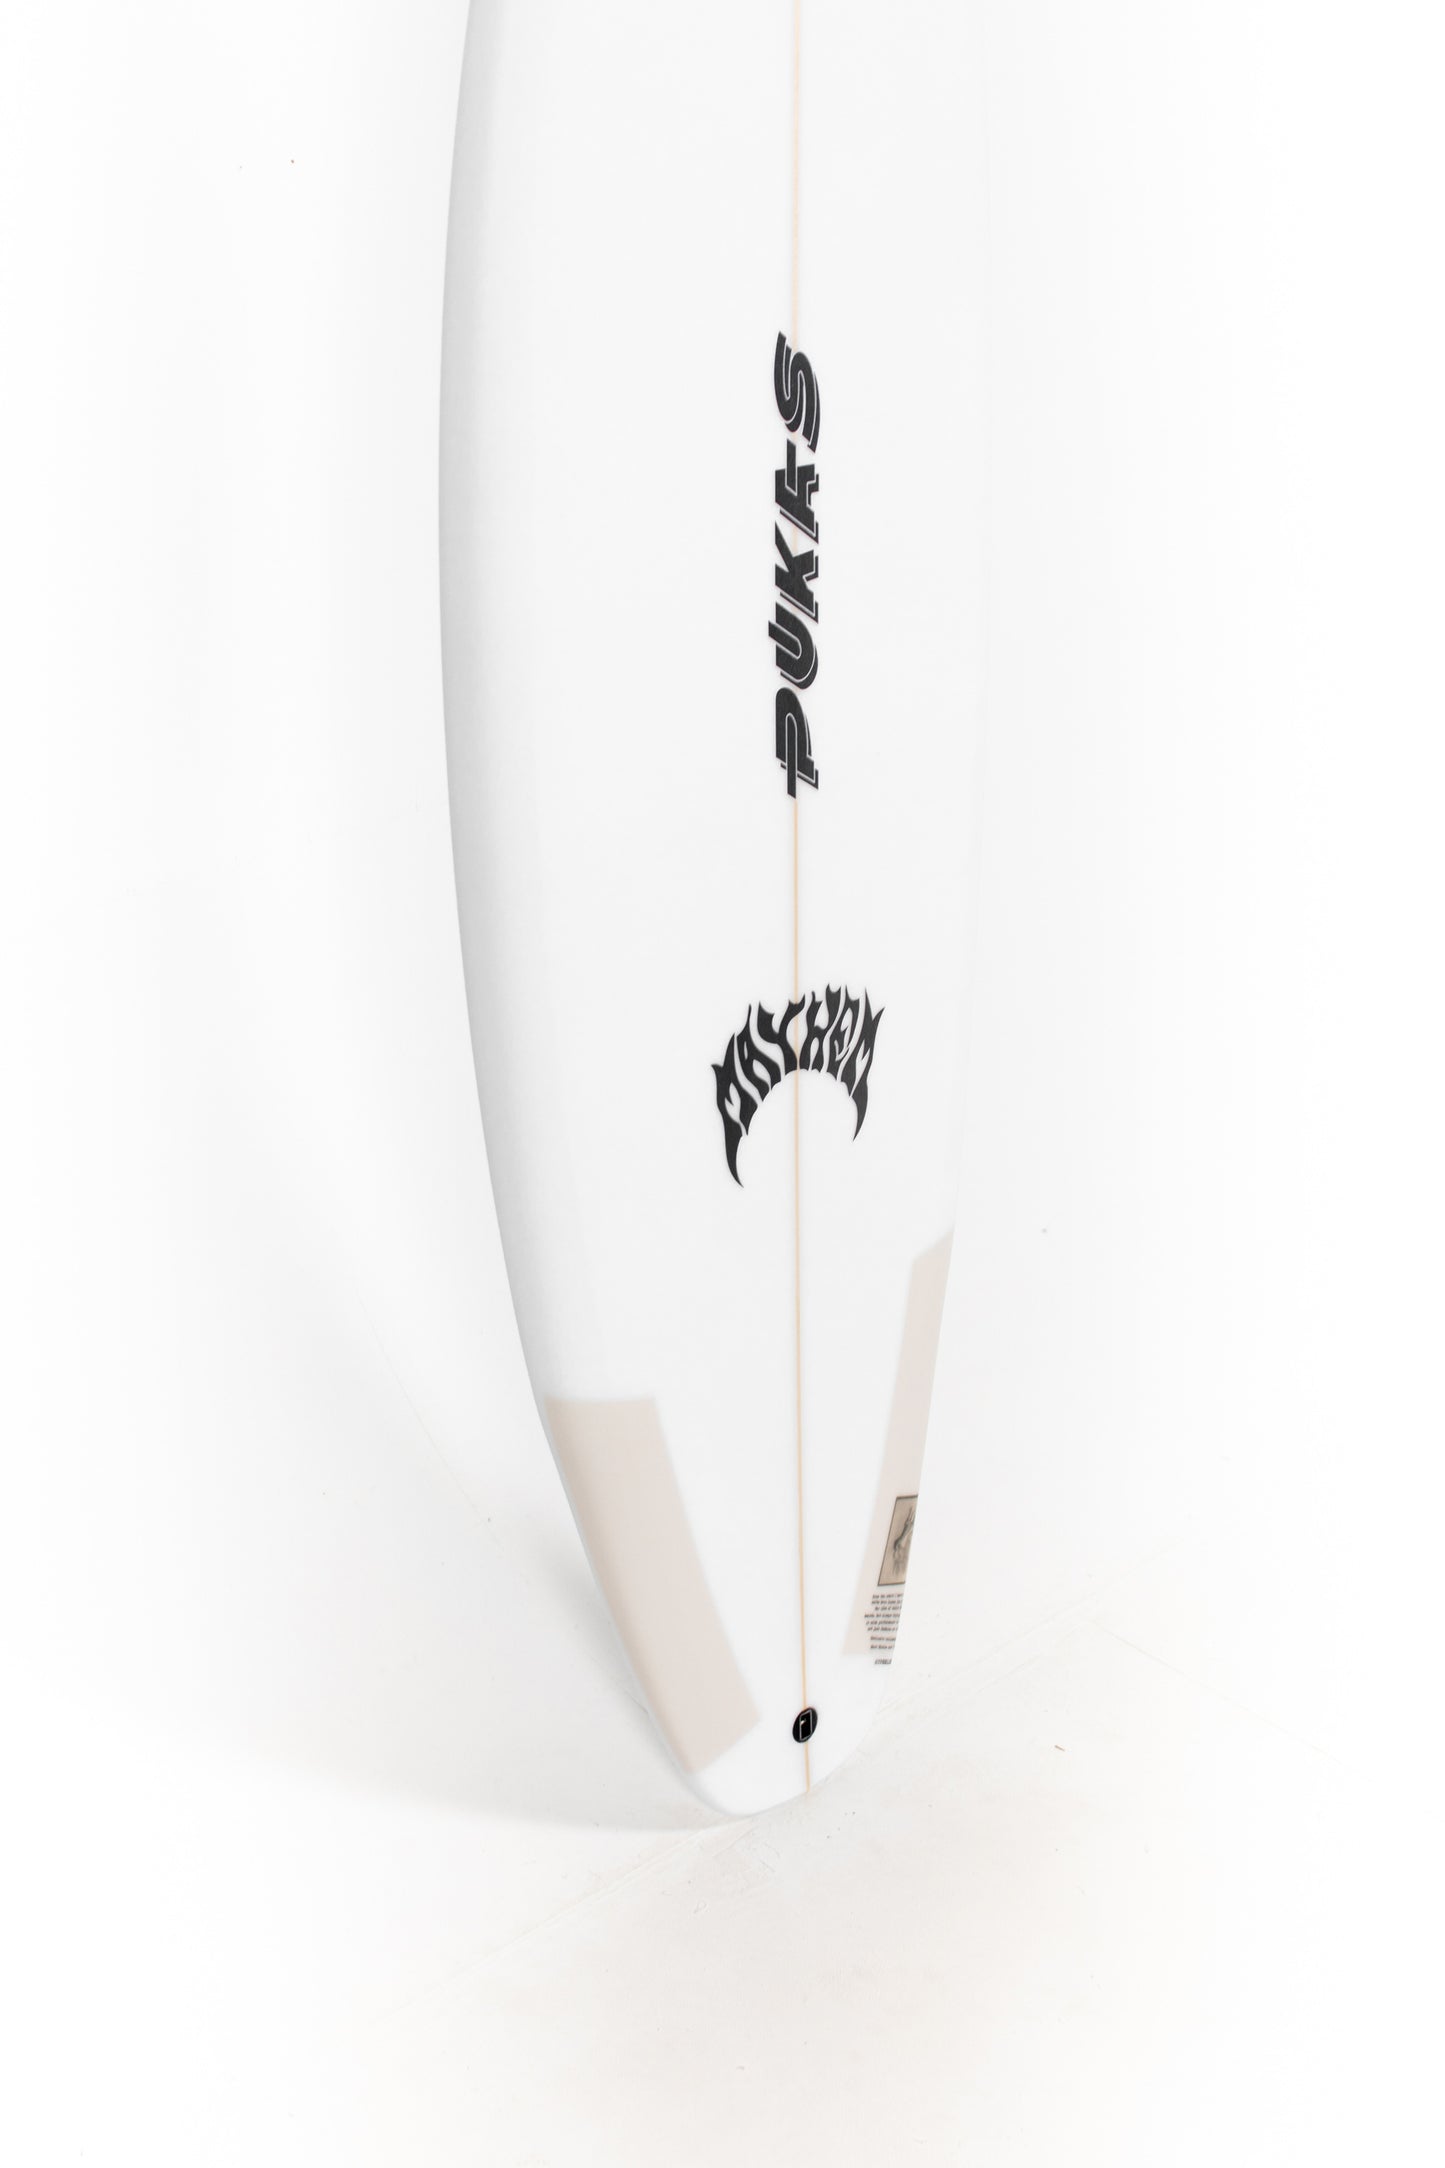 Pukas Surfboard - HYPERLINK by Matt Biolos - 5'8